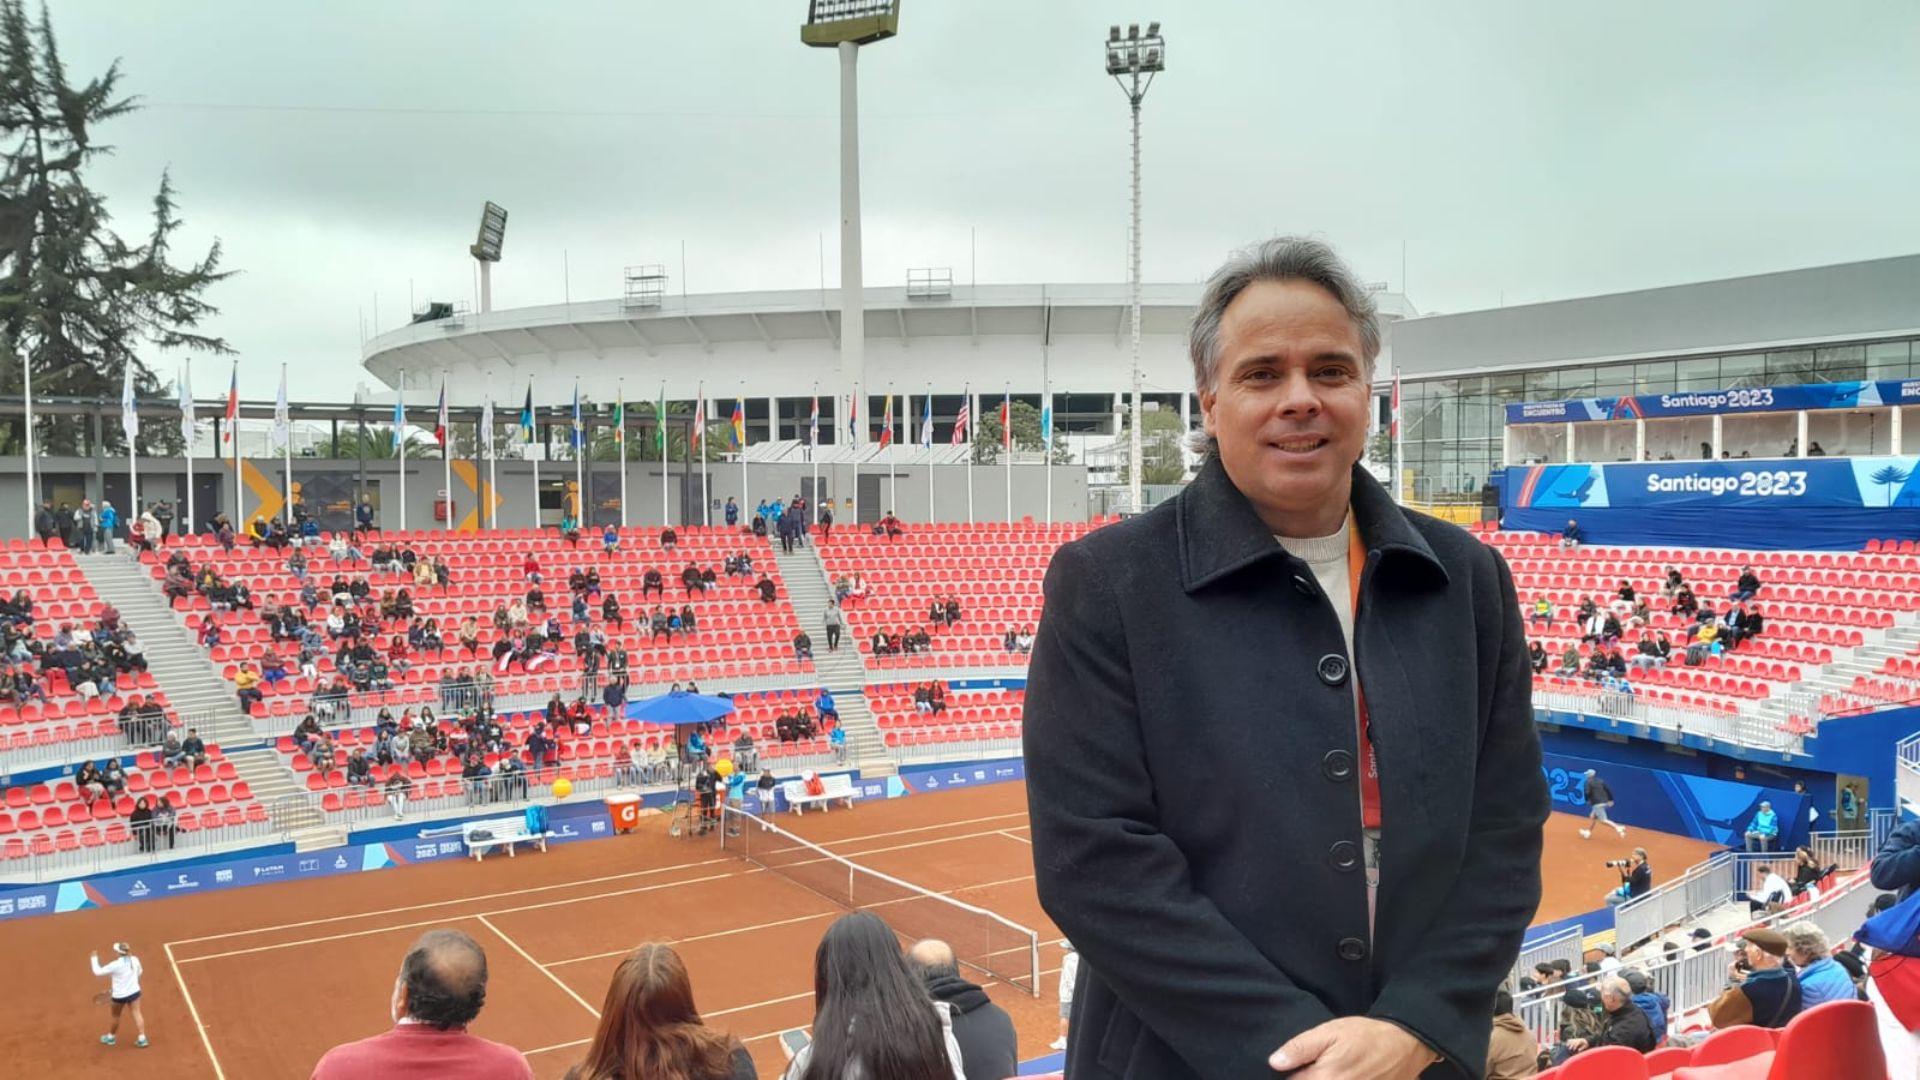 Fernando González, legend of the chilean tennis and Santiago 2023 ambassador. (Picture: Vicente Vázquez).